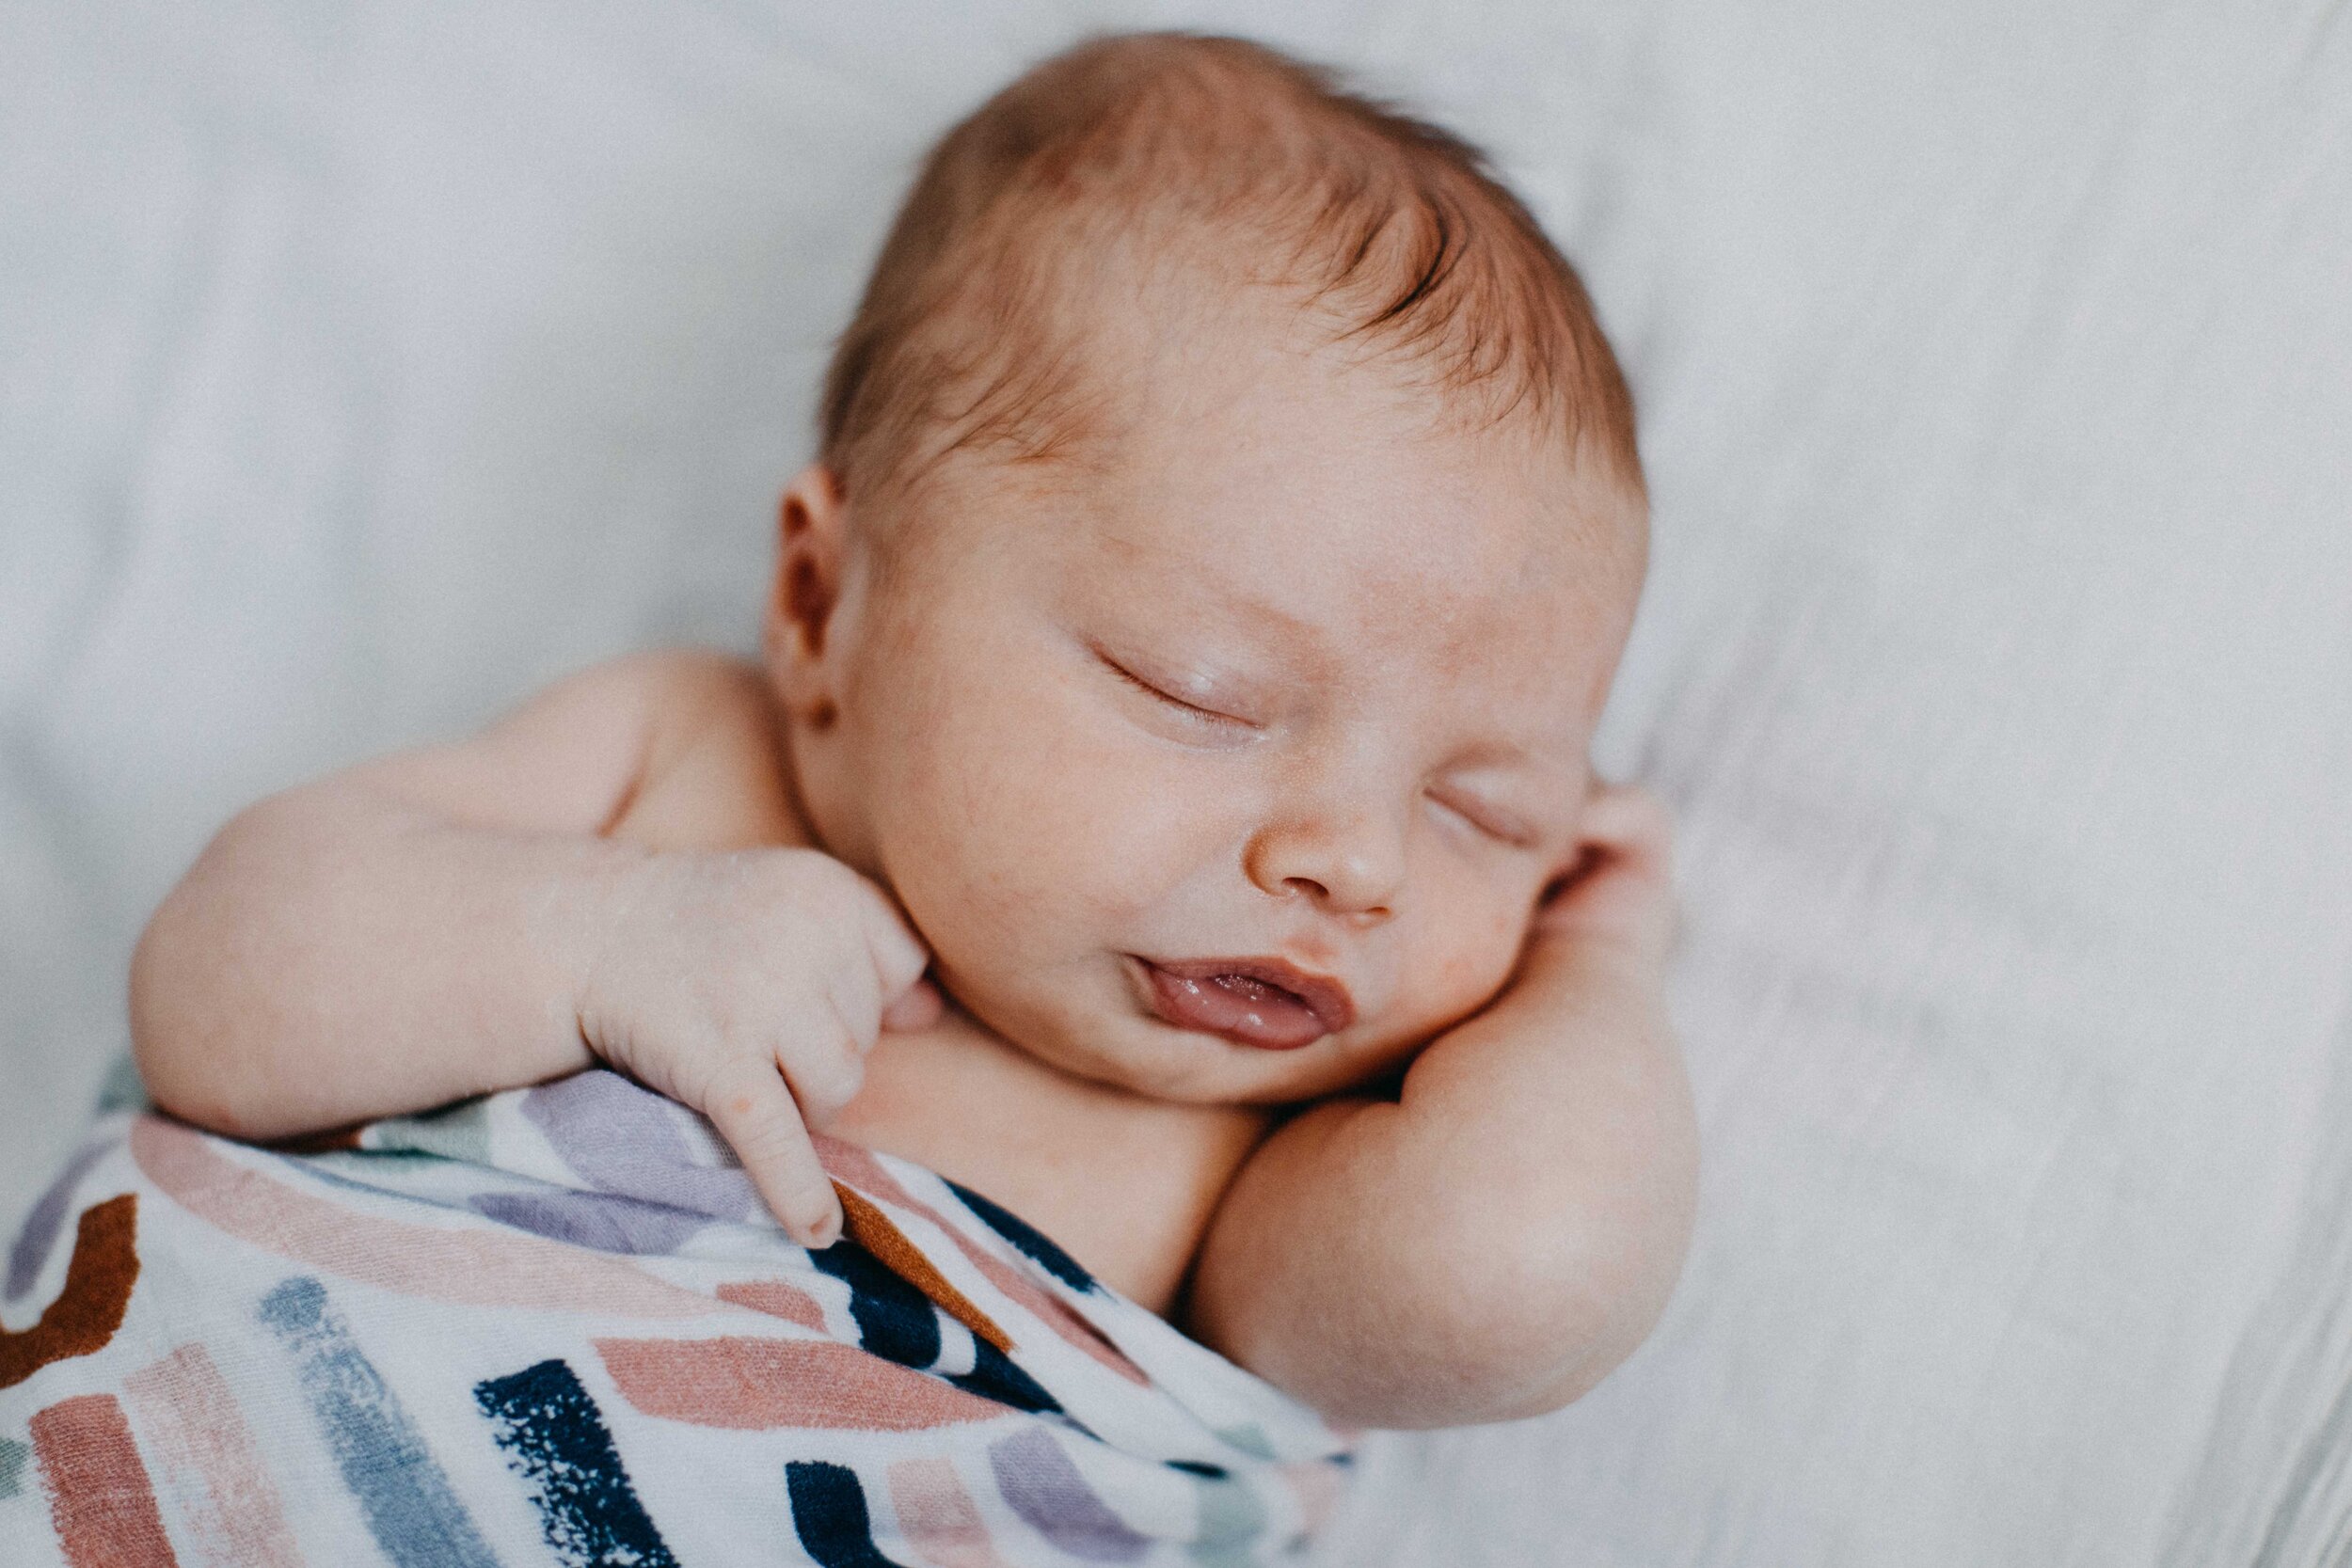 camden-newborn-photographer-lucas-brown-50.jpg